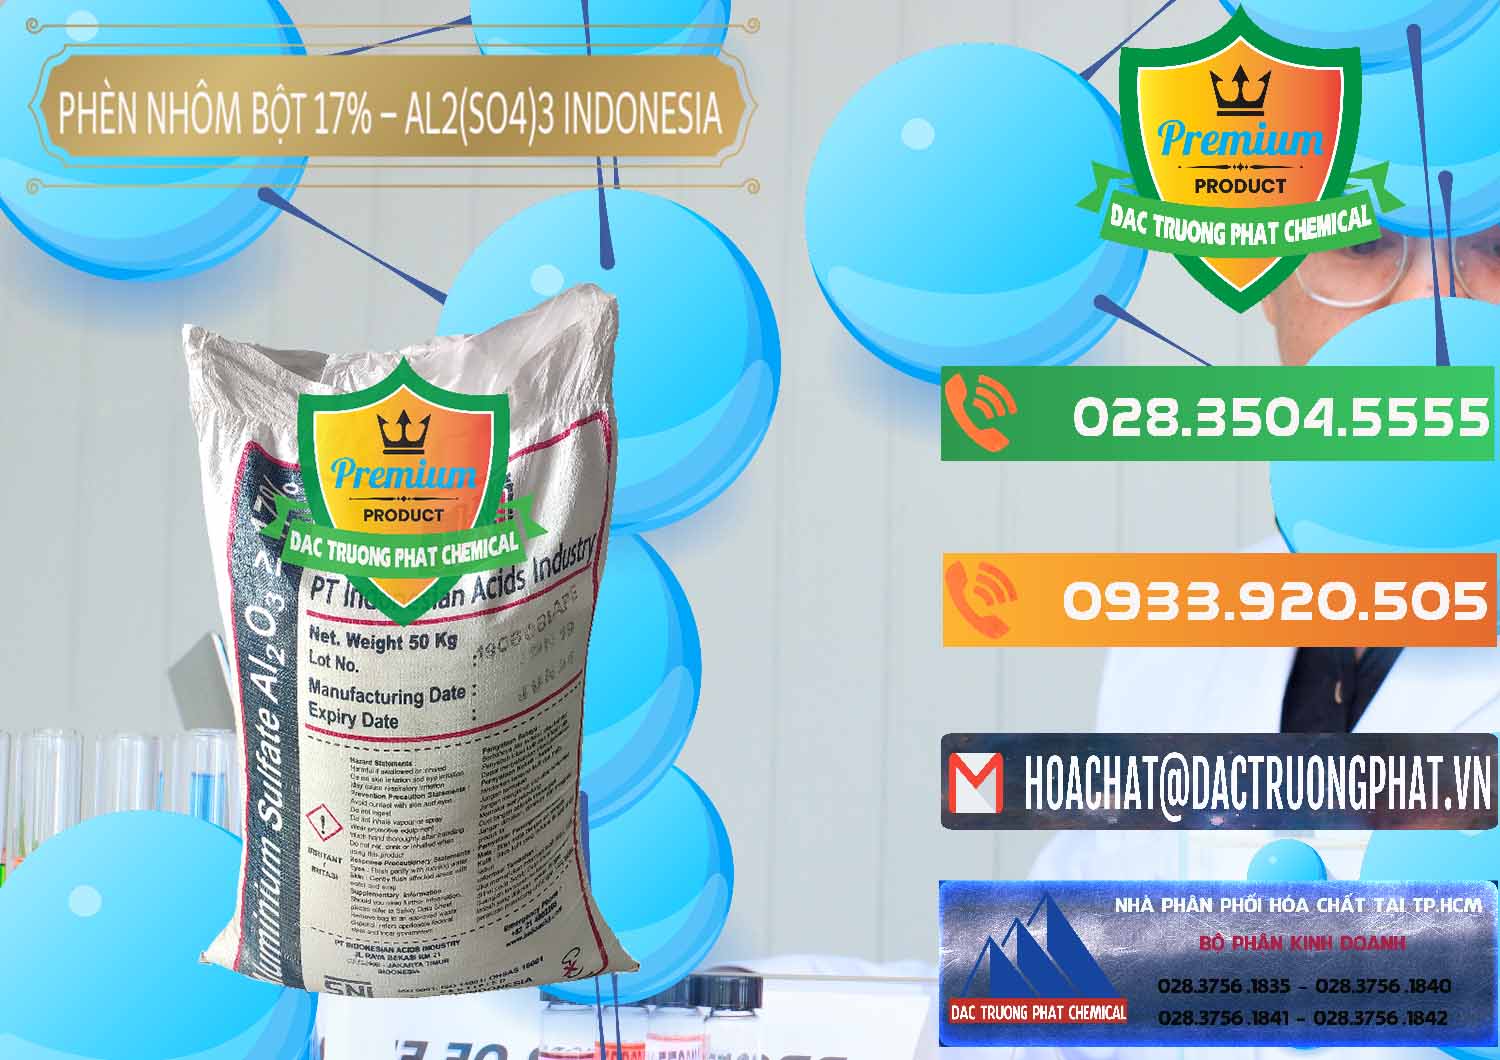 Đơn vị chuyên bán & cung cấp Phèn Nhôm Bột - Al2(SO4)3 17% bao 50kg Indonesia - 0112 - Công ty chuyên kinh doanh ( phân phối ) hóa chất tại TP.HCM - hoachatxulynuoc.com.vn